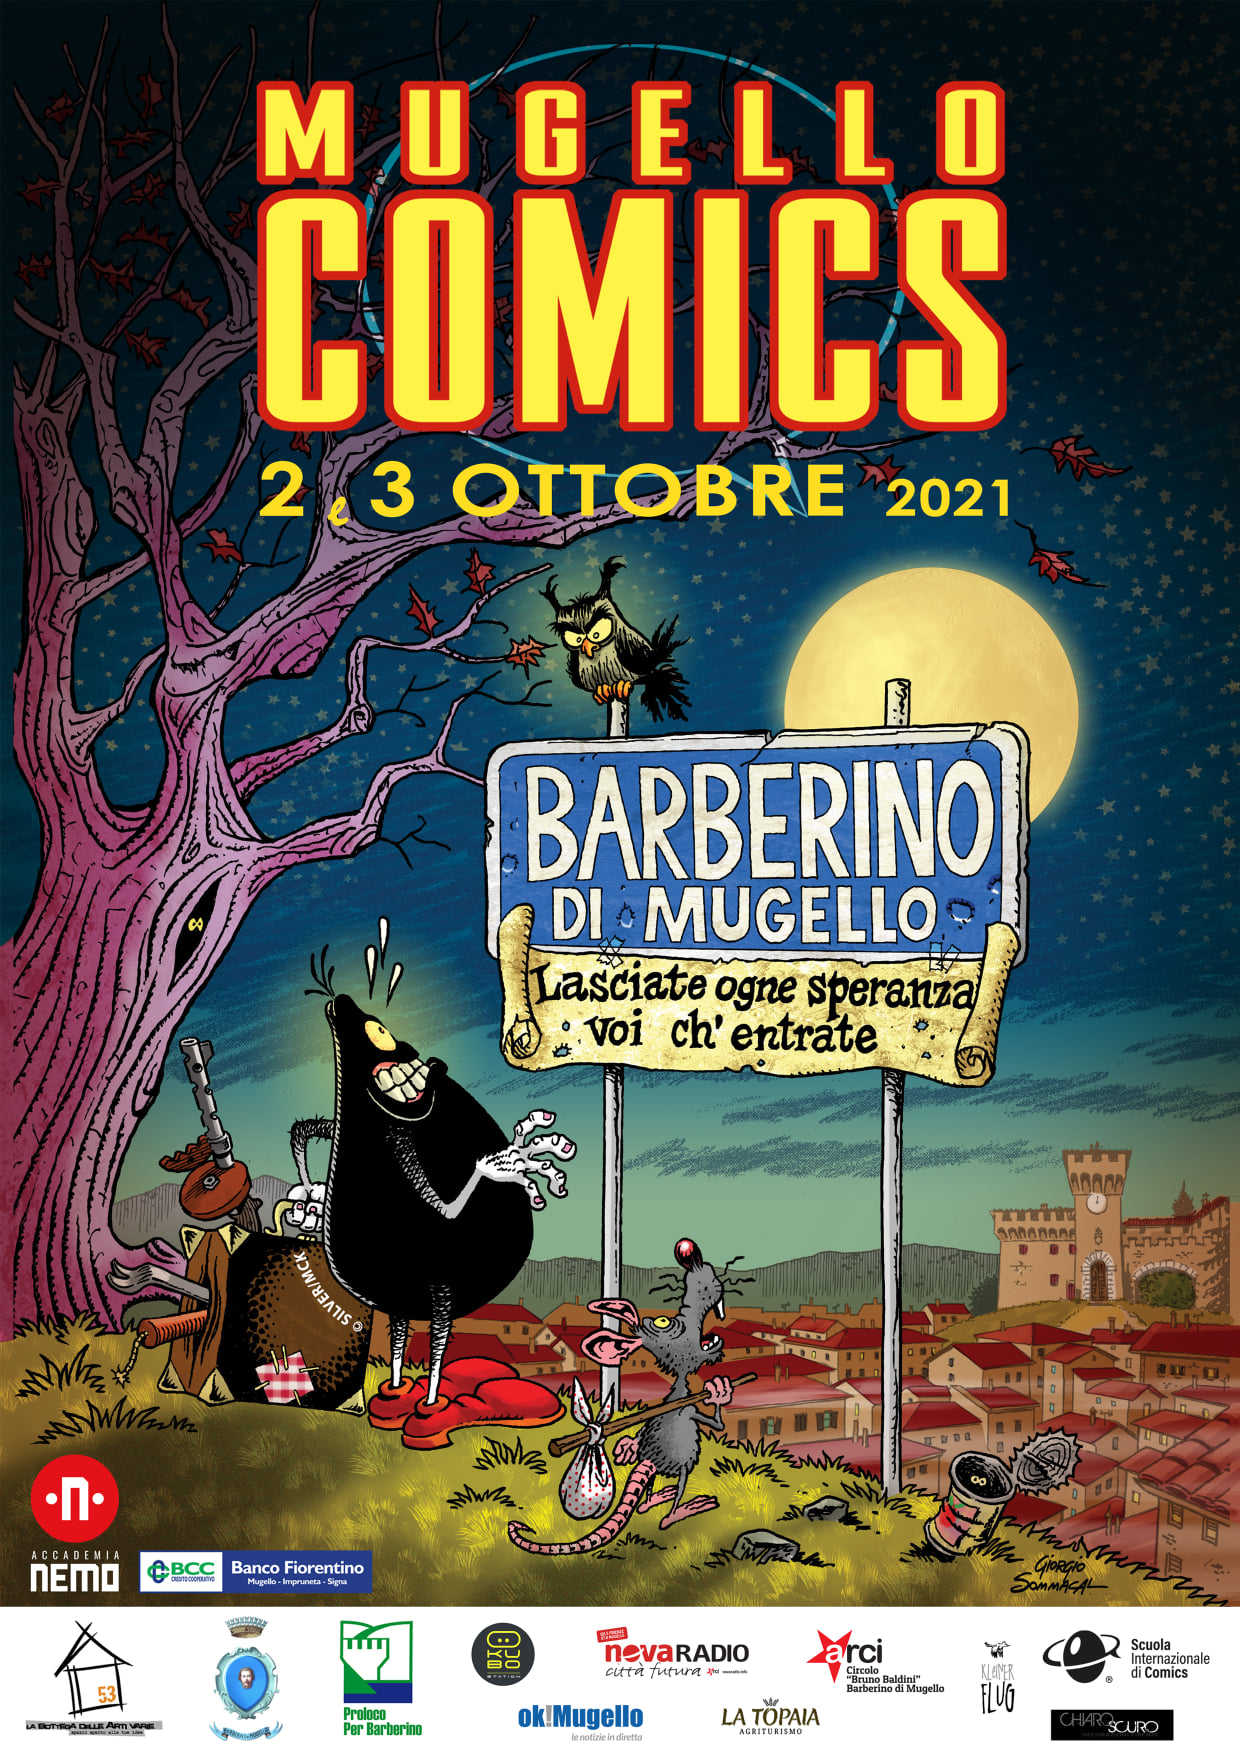 Mugello Comics: 2-3 ottobre 2021